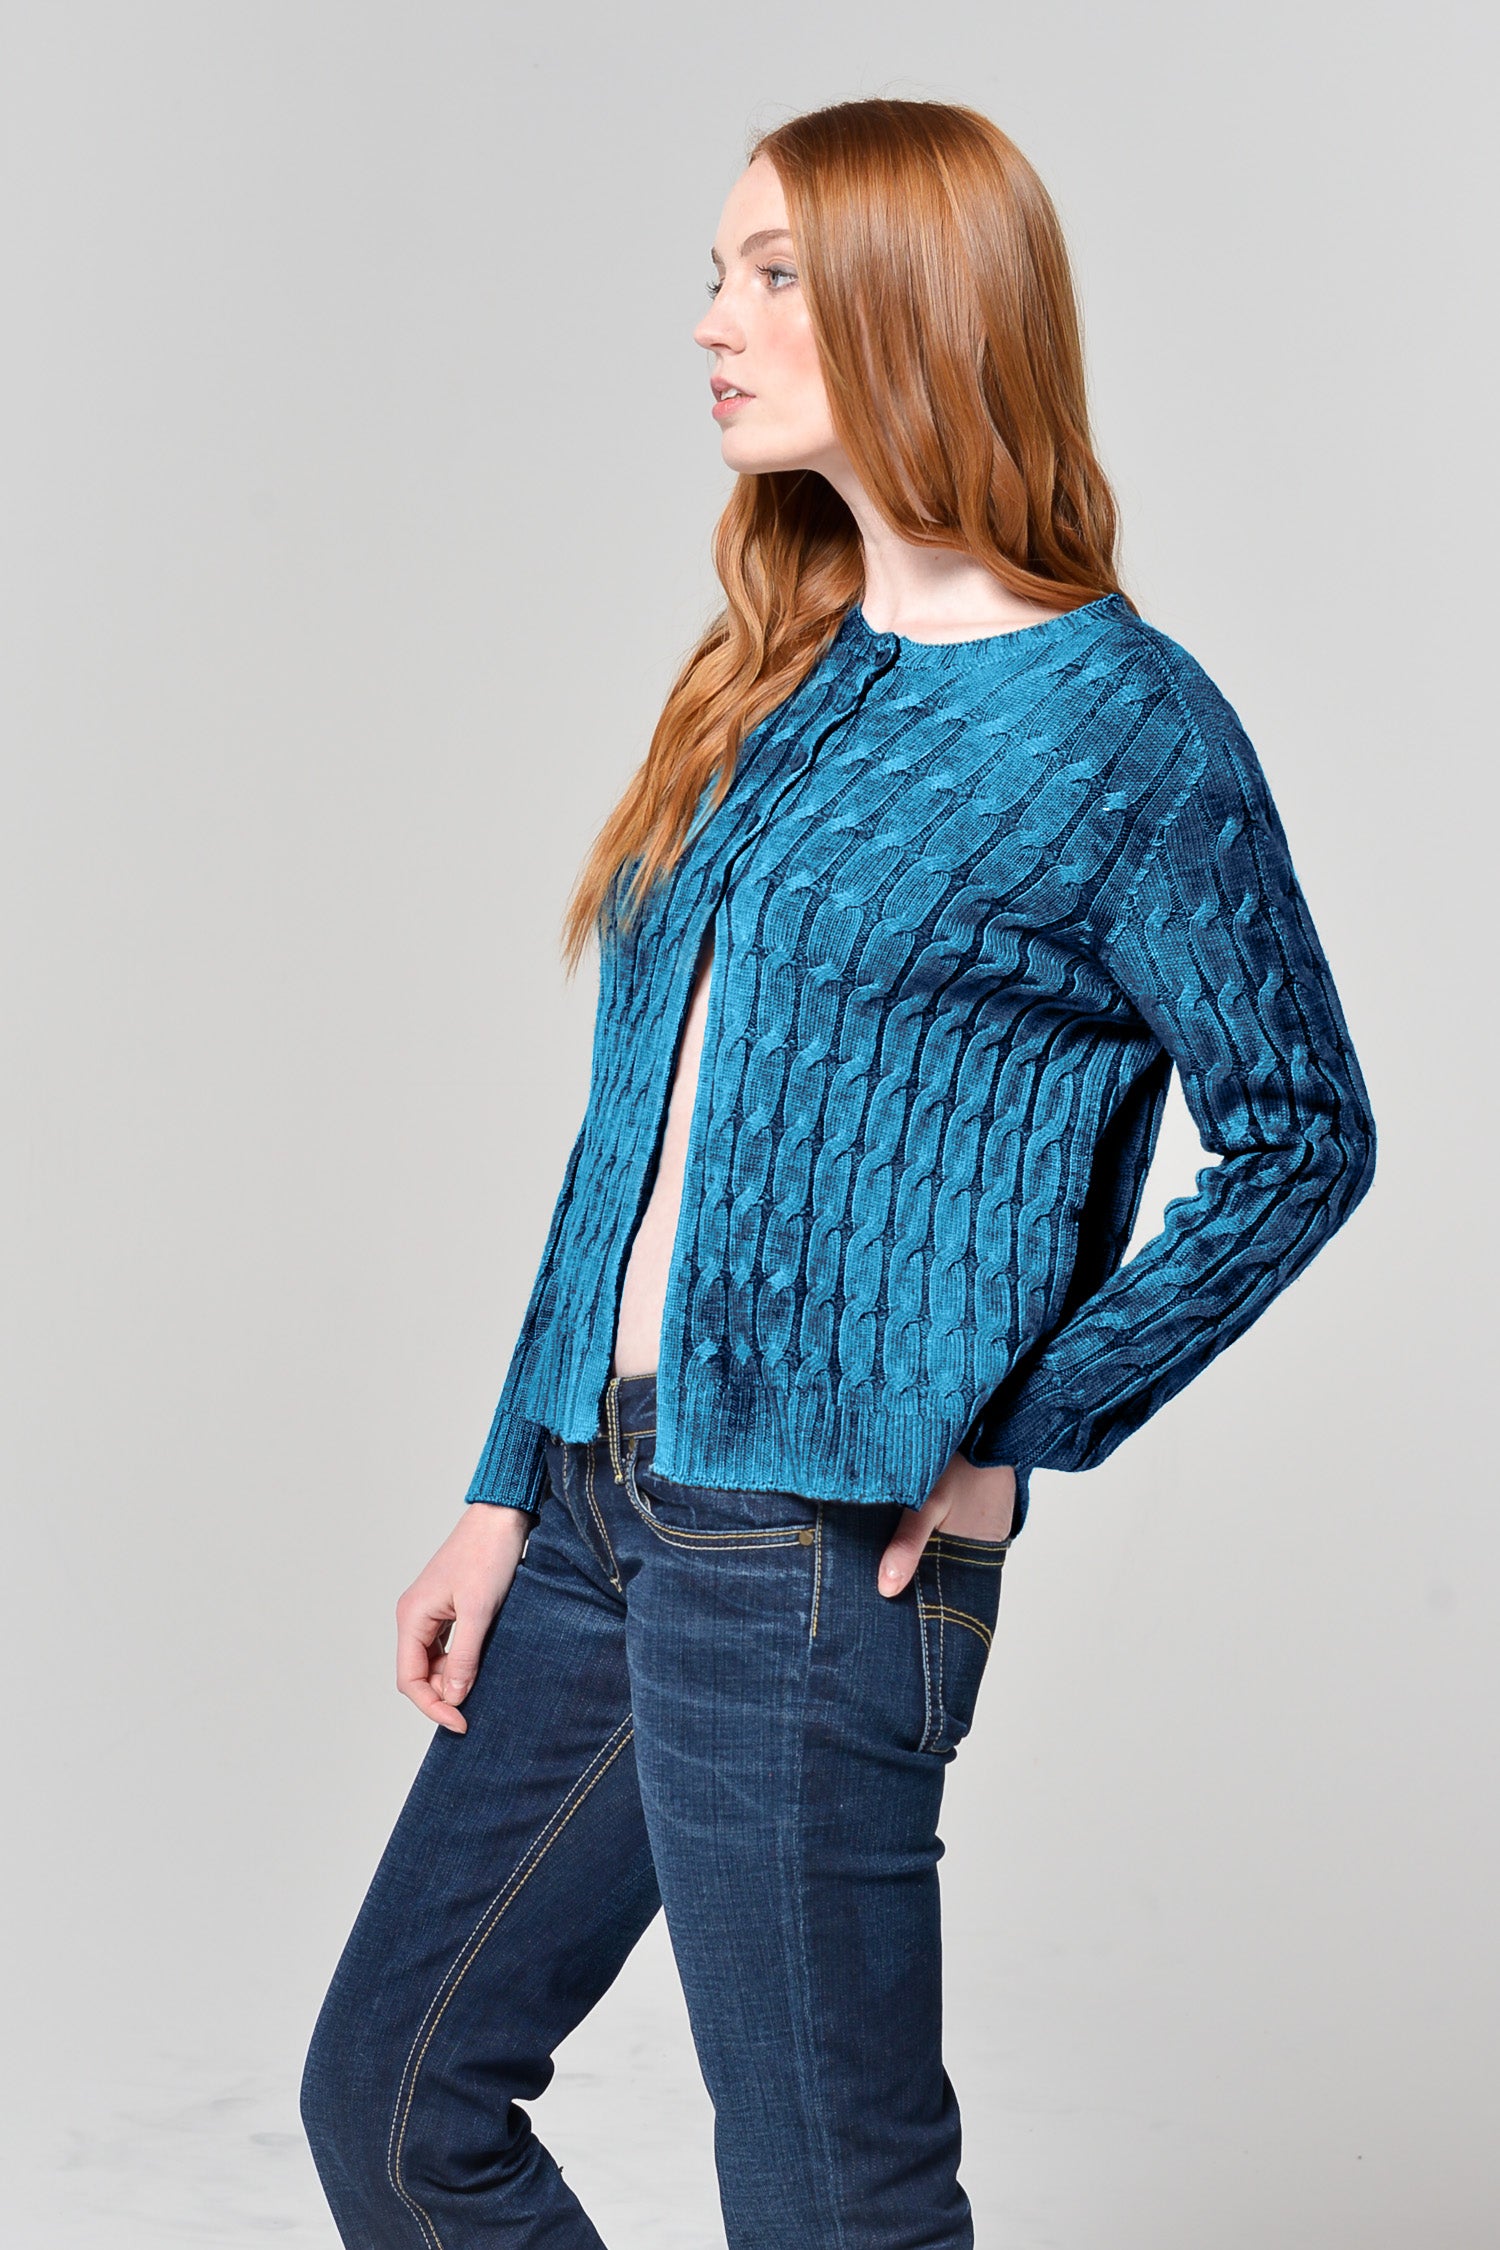 Dores Rock Art Sweater - Kimber